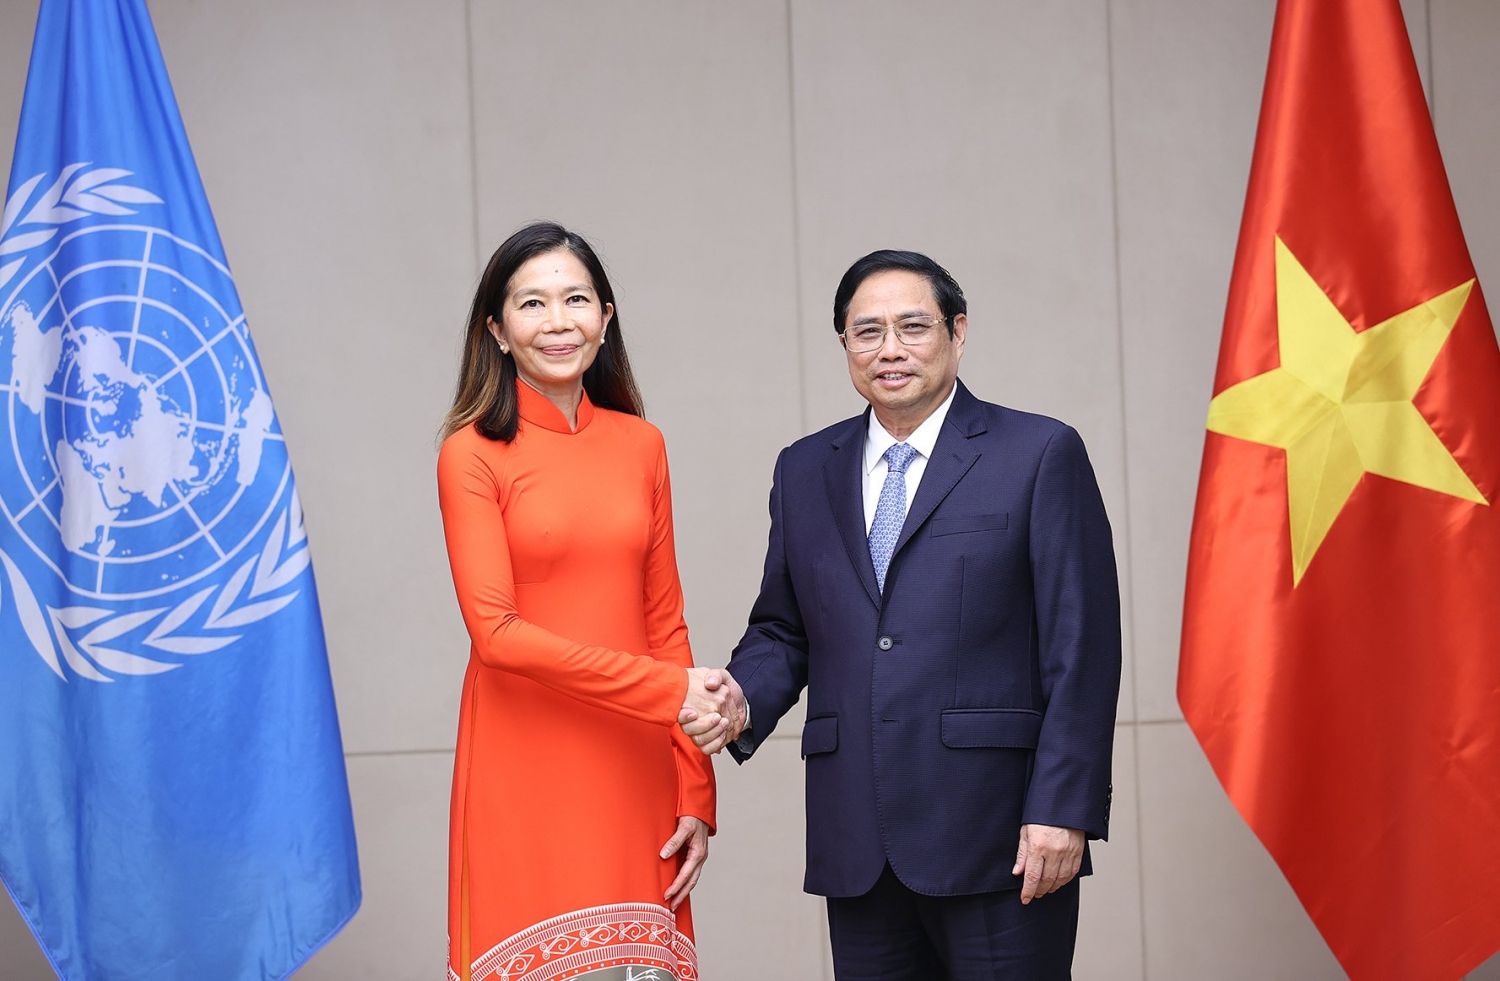 Thủ tướng Phạm Minh Chính tiếp Điều phối viên thường trú Liên hợp quốc trình Quốc thư